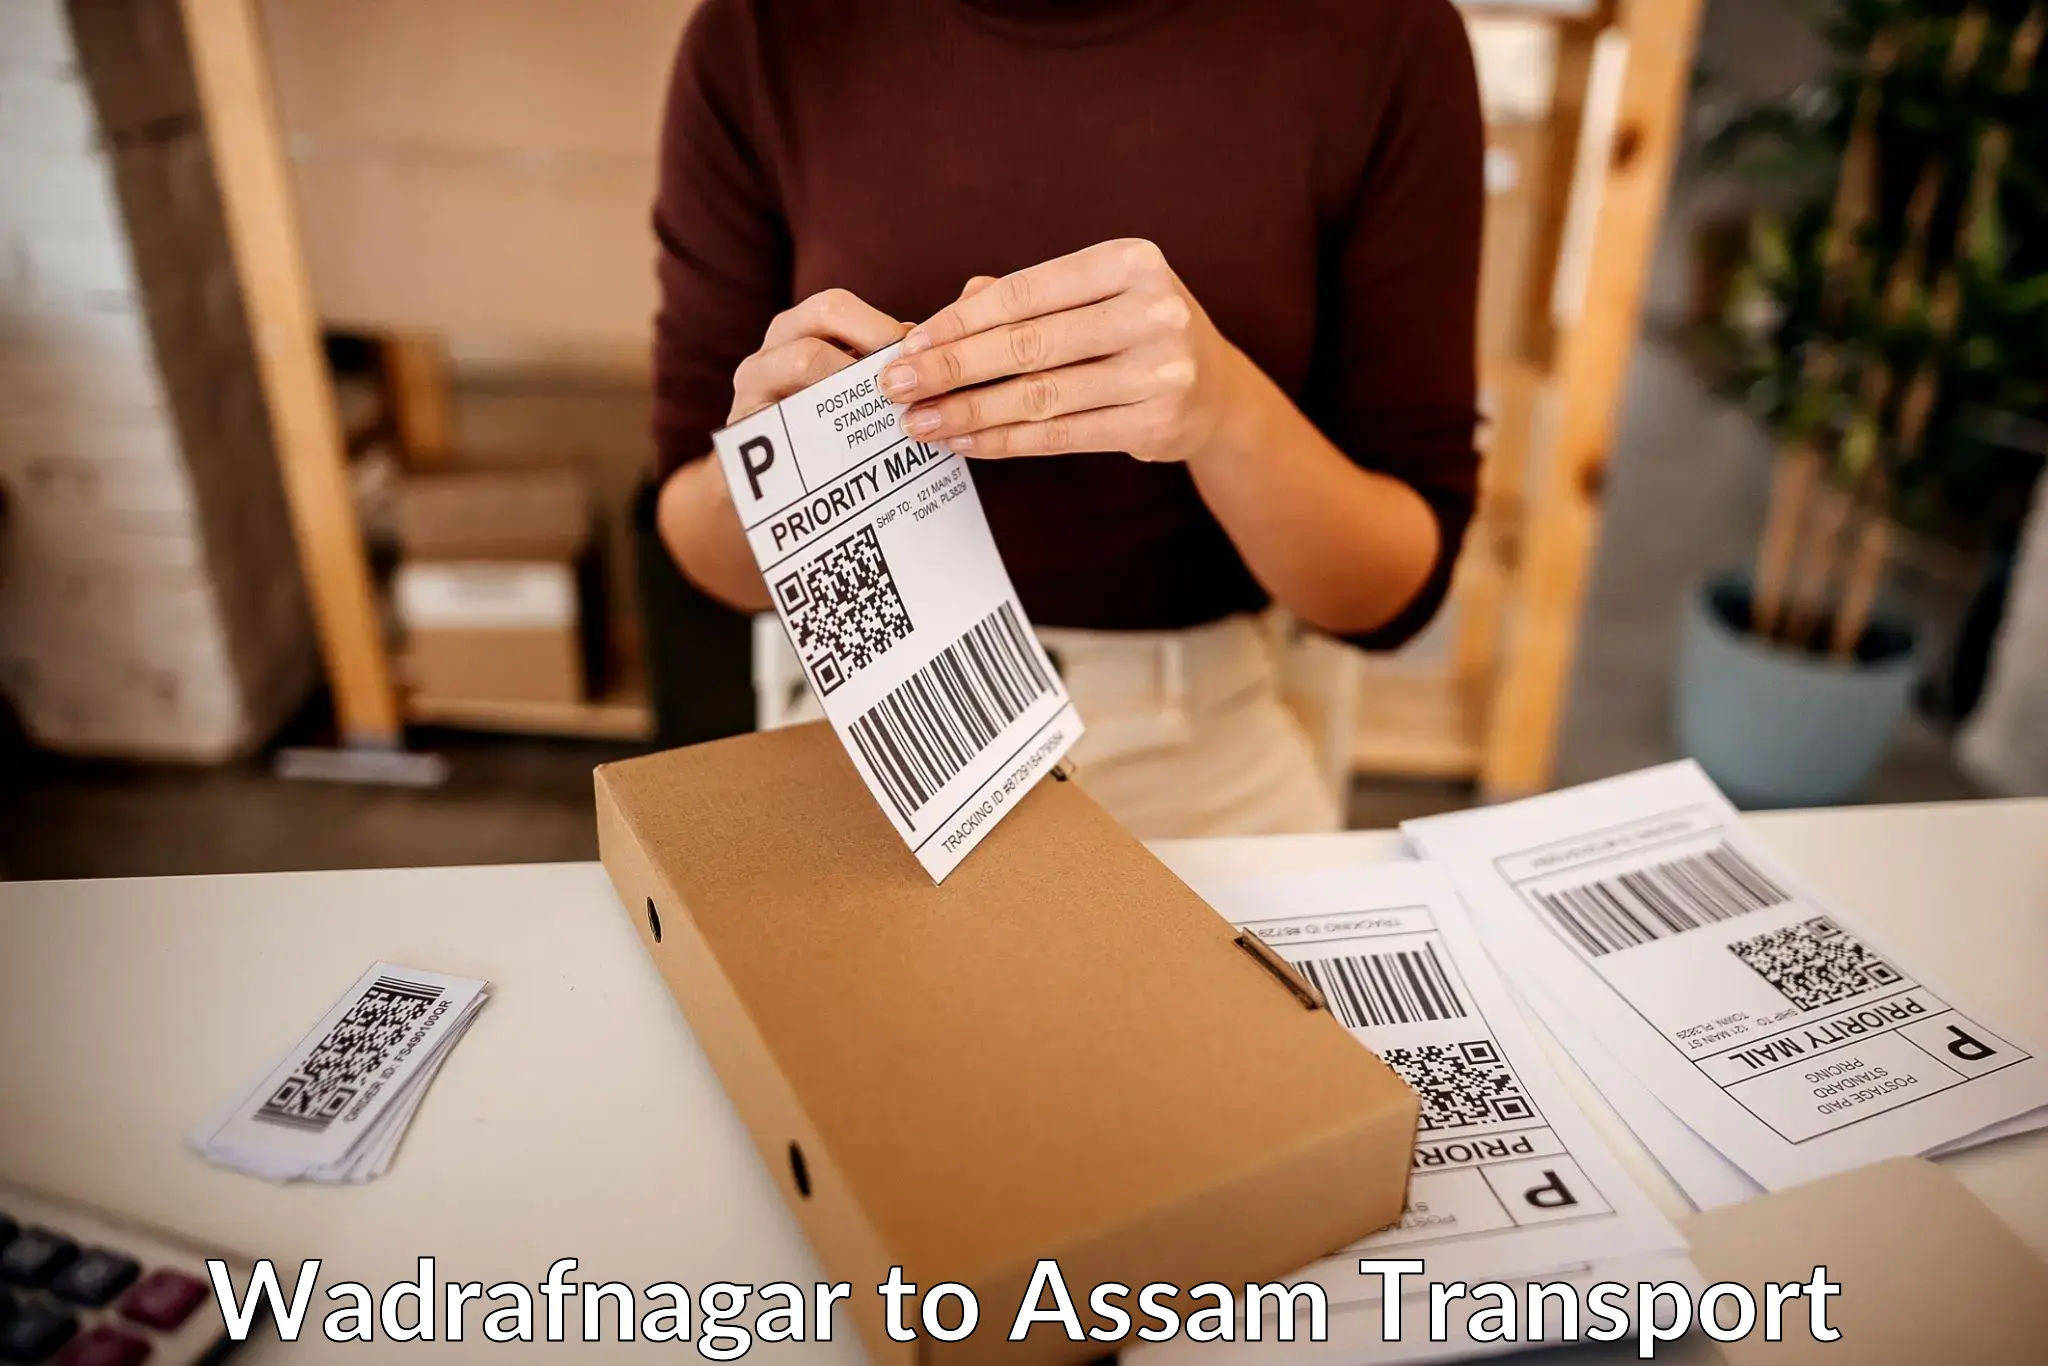 All India transport service Wadrafnagar to Assam